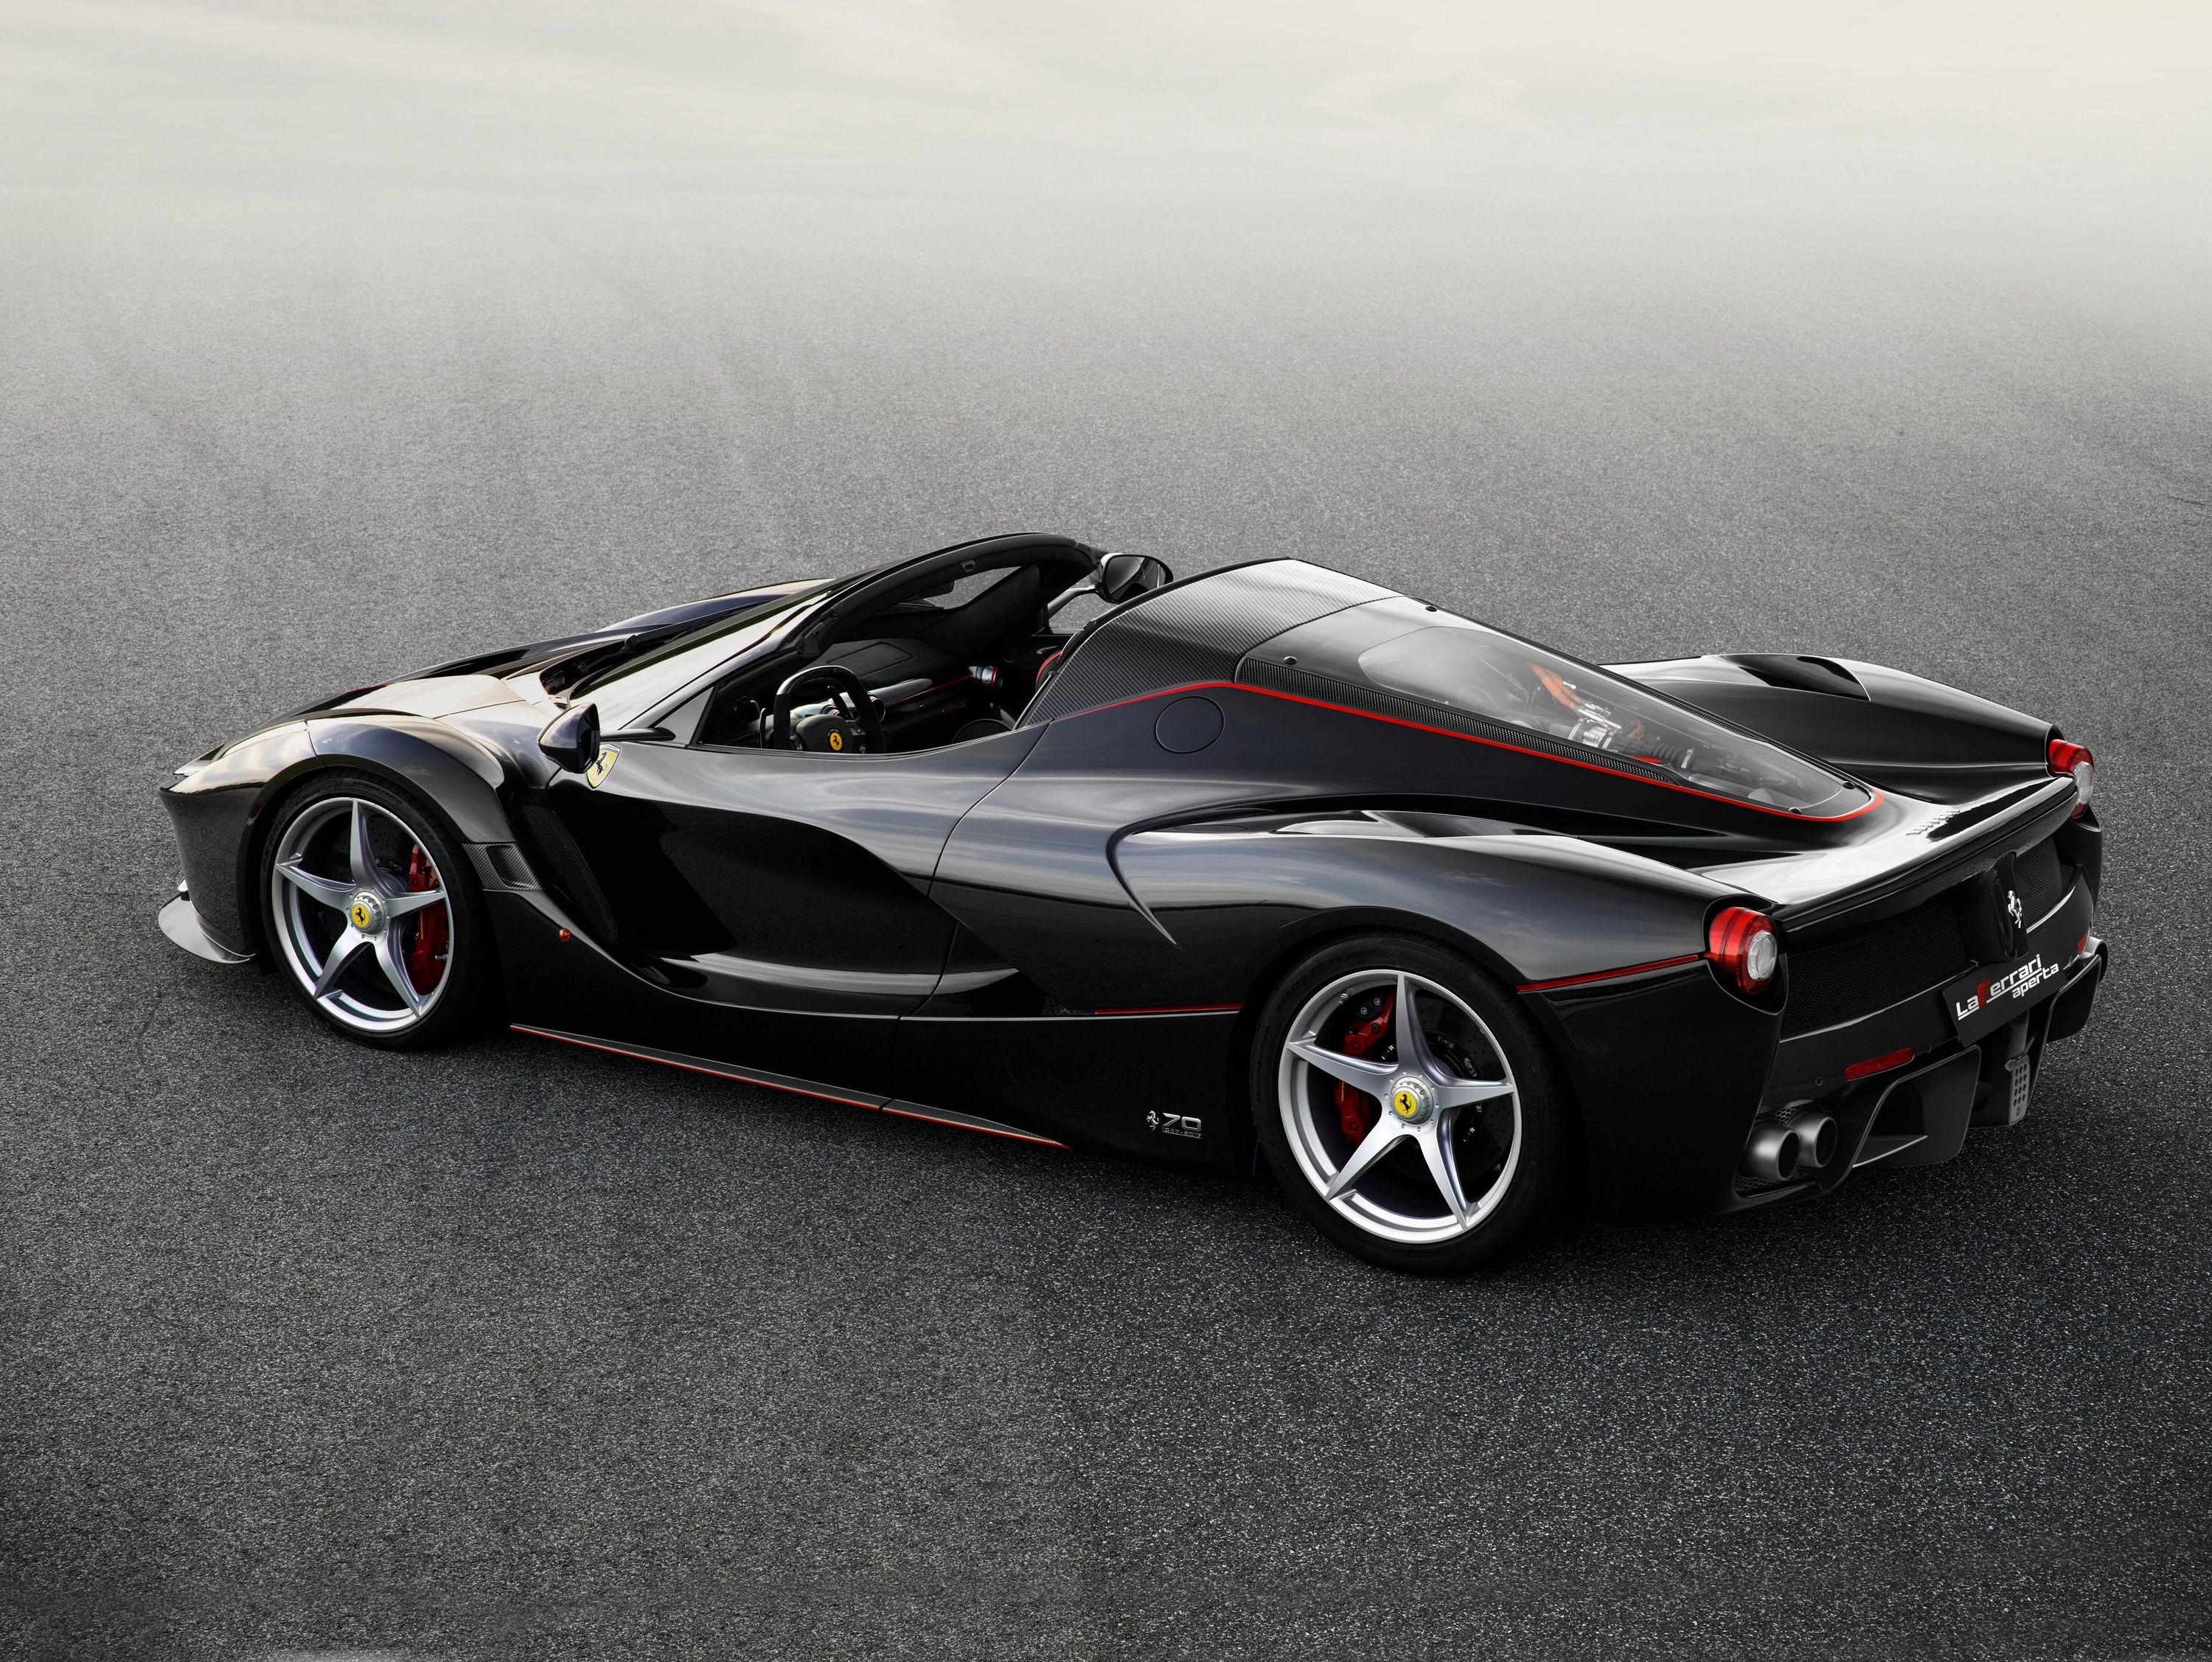 A black Ferrari LaFerrari Aperta